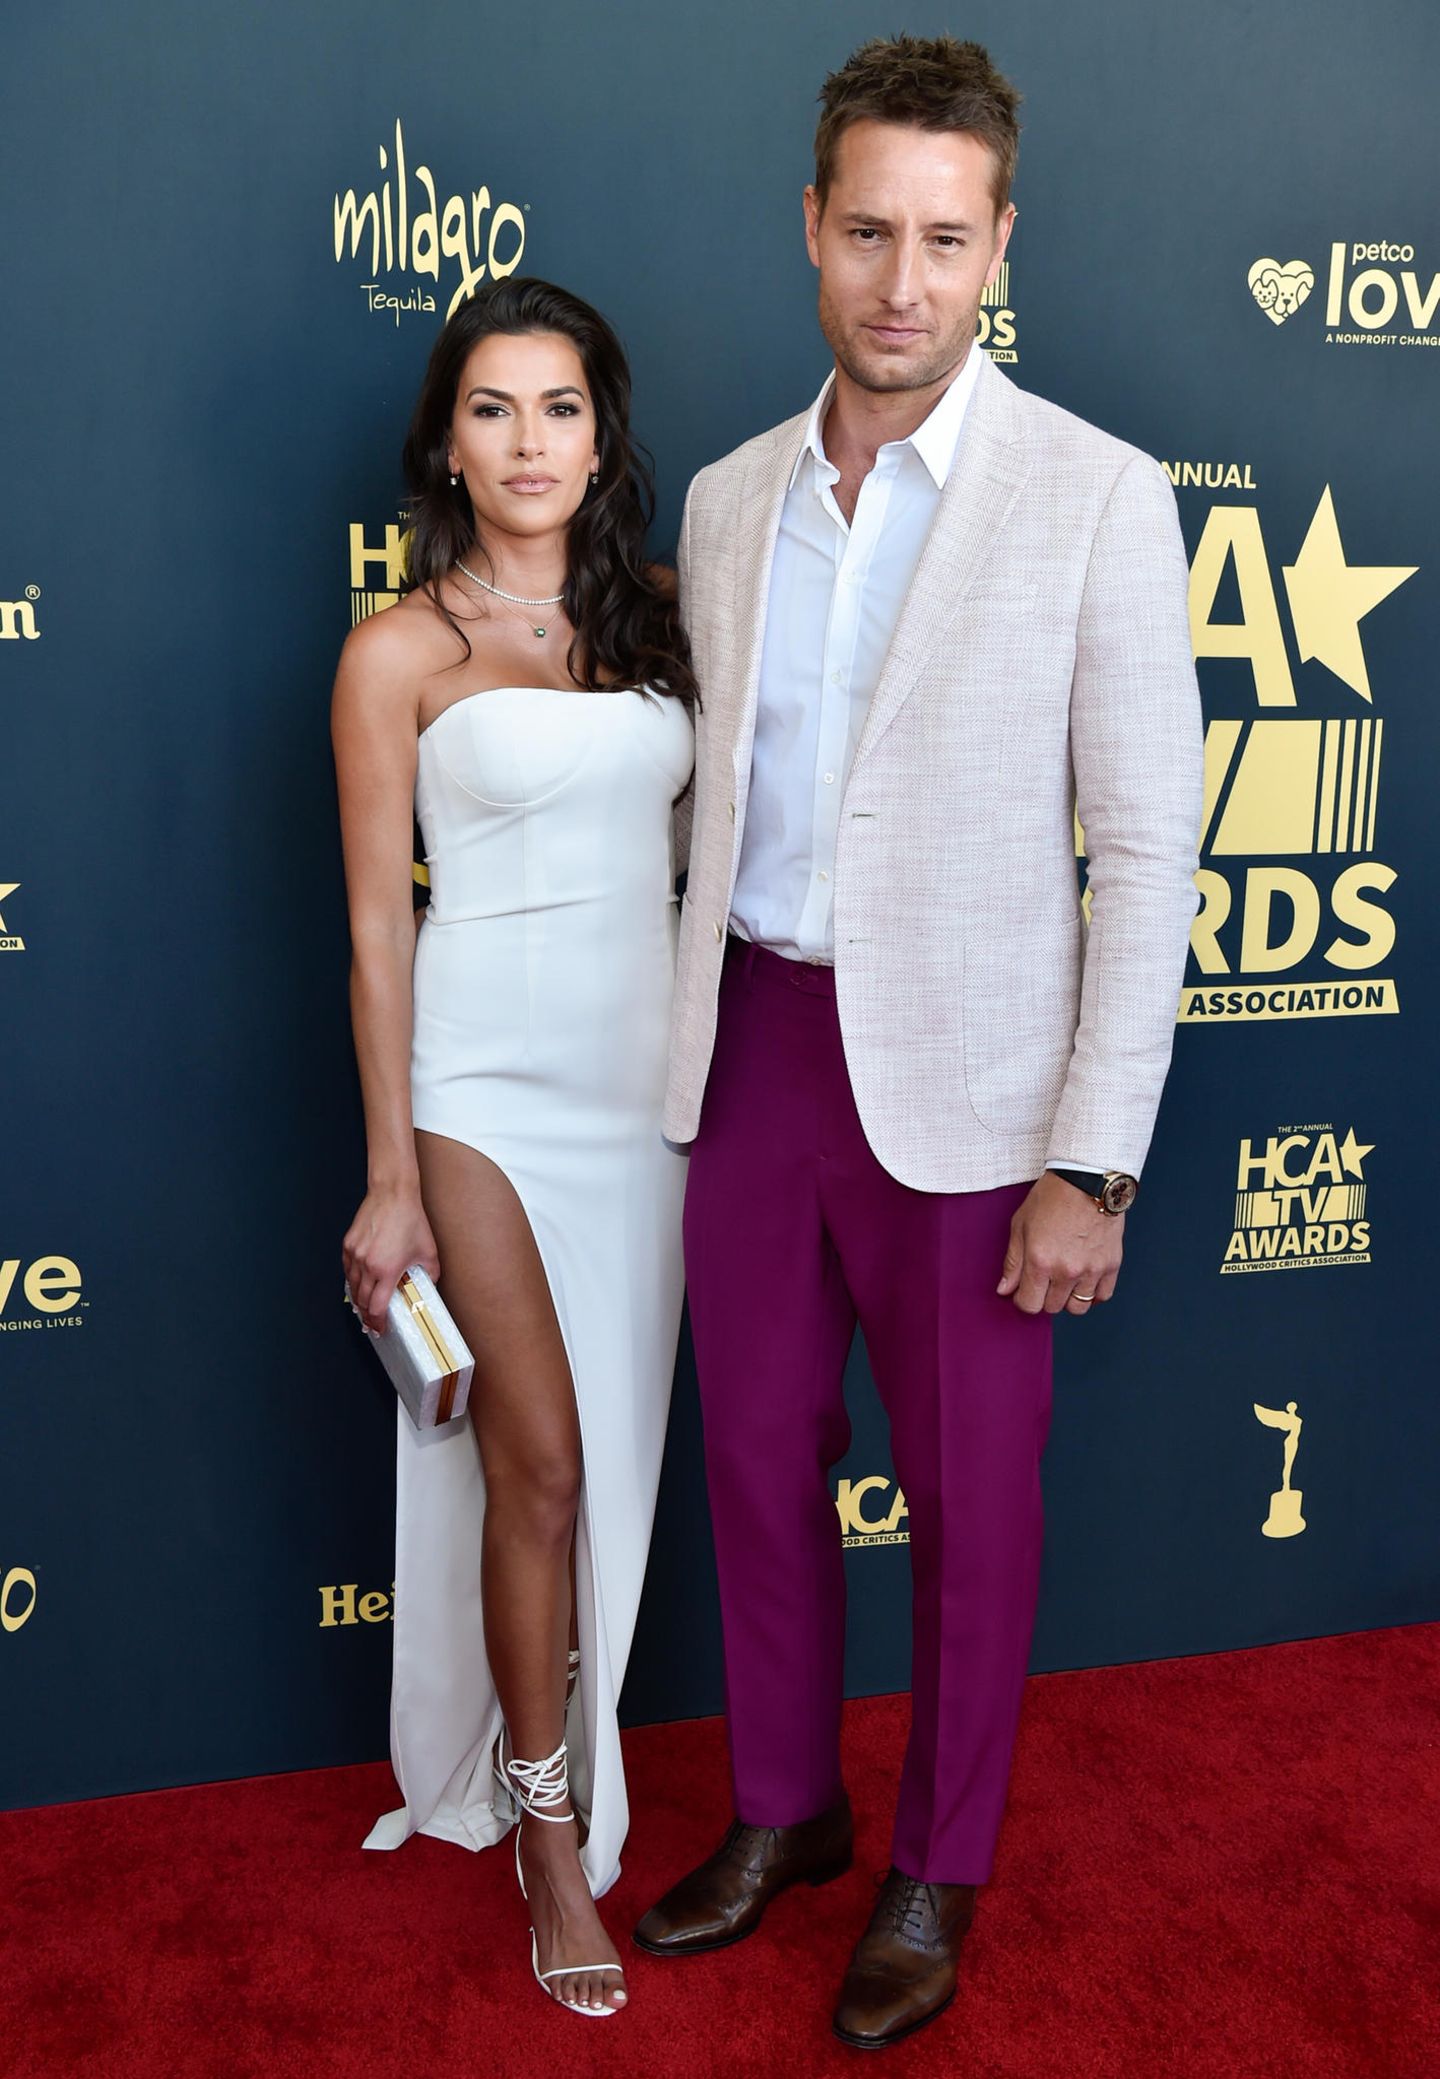 Justin Hartley bringt farblichen Kontrast auf den Red Carpet. Bei den HCA TV Awards trägt er eine violettfarbene Stoffhose zum weißen Hemd und Leinenblazer. Seine Ehefrau Sofia Pernas ist da etwas zurückhaltender und wählt eine weiße Robe mit großem Beinausschnitt. 